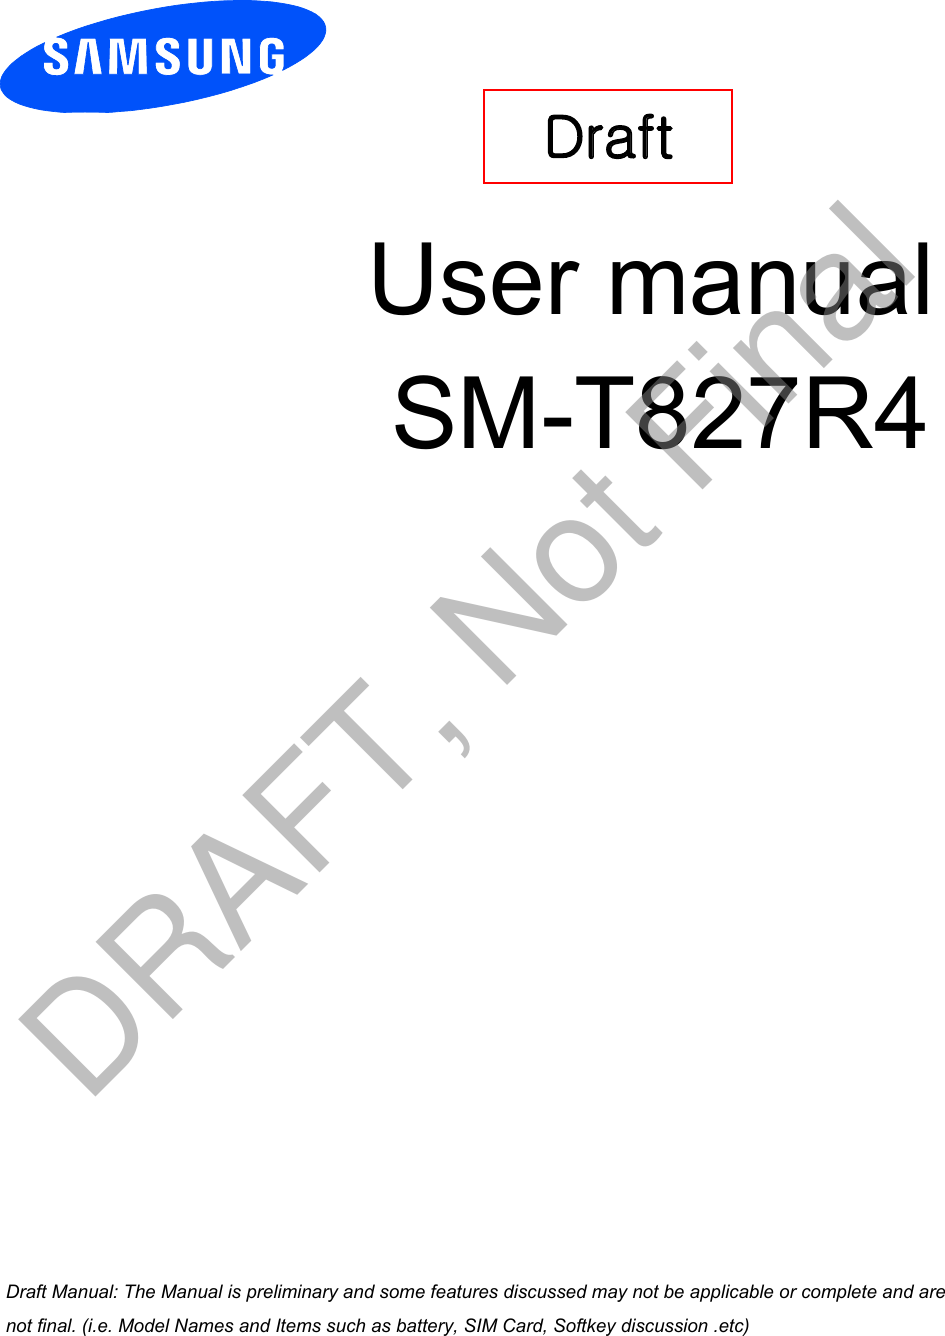 User manual SM-T827R4Draft a ana  ana  na and  a dd a n  aa   and a n na  d a and   a a  ad  dn DRAFT, Not Final